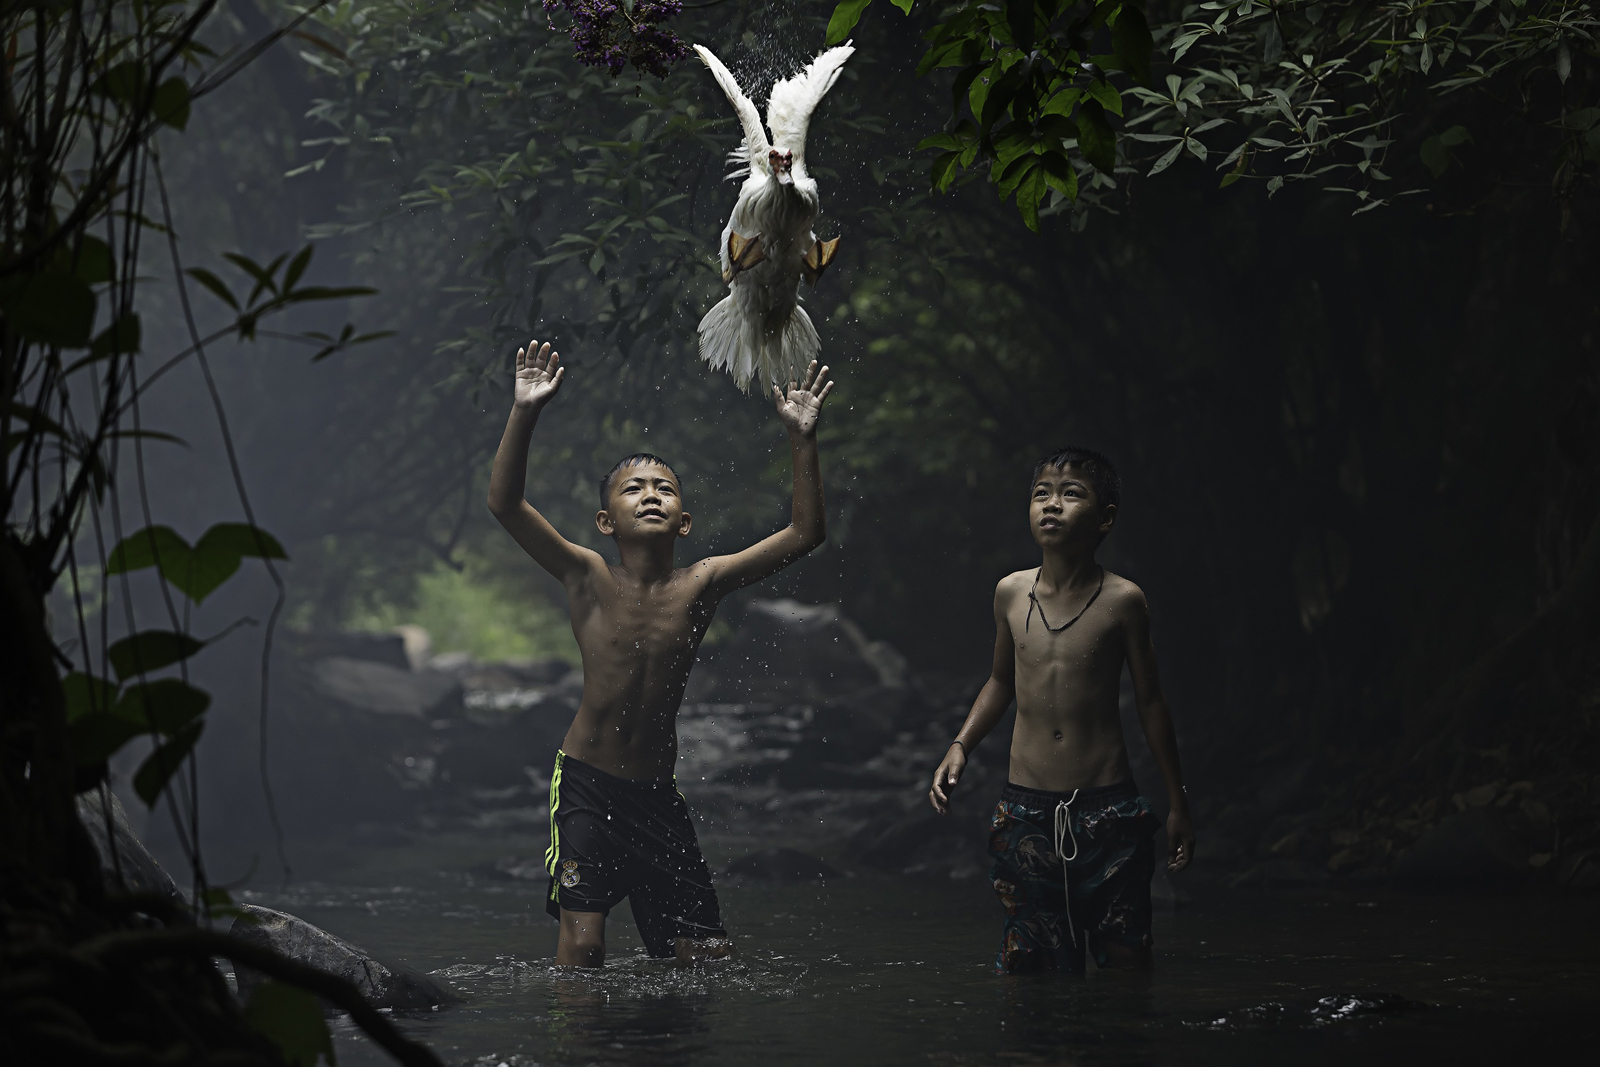 الصور الفائزة في مسابقة ناشيونال جيوغرافيك 2015 - اصطياد البط 